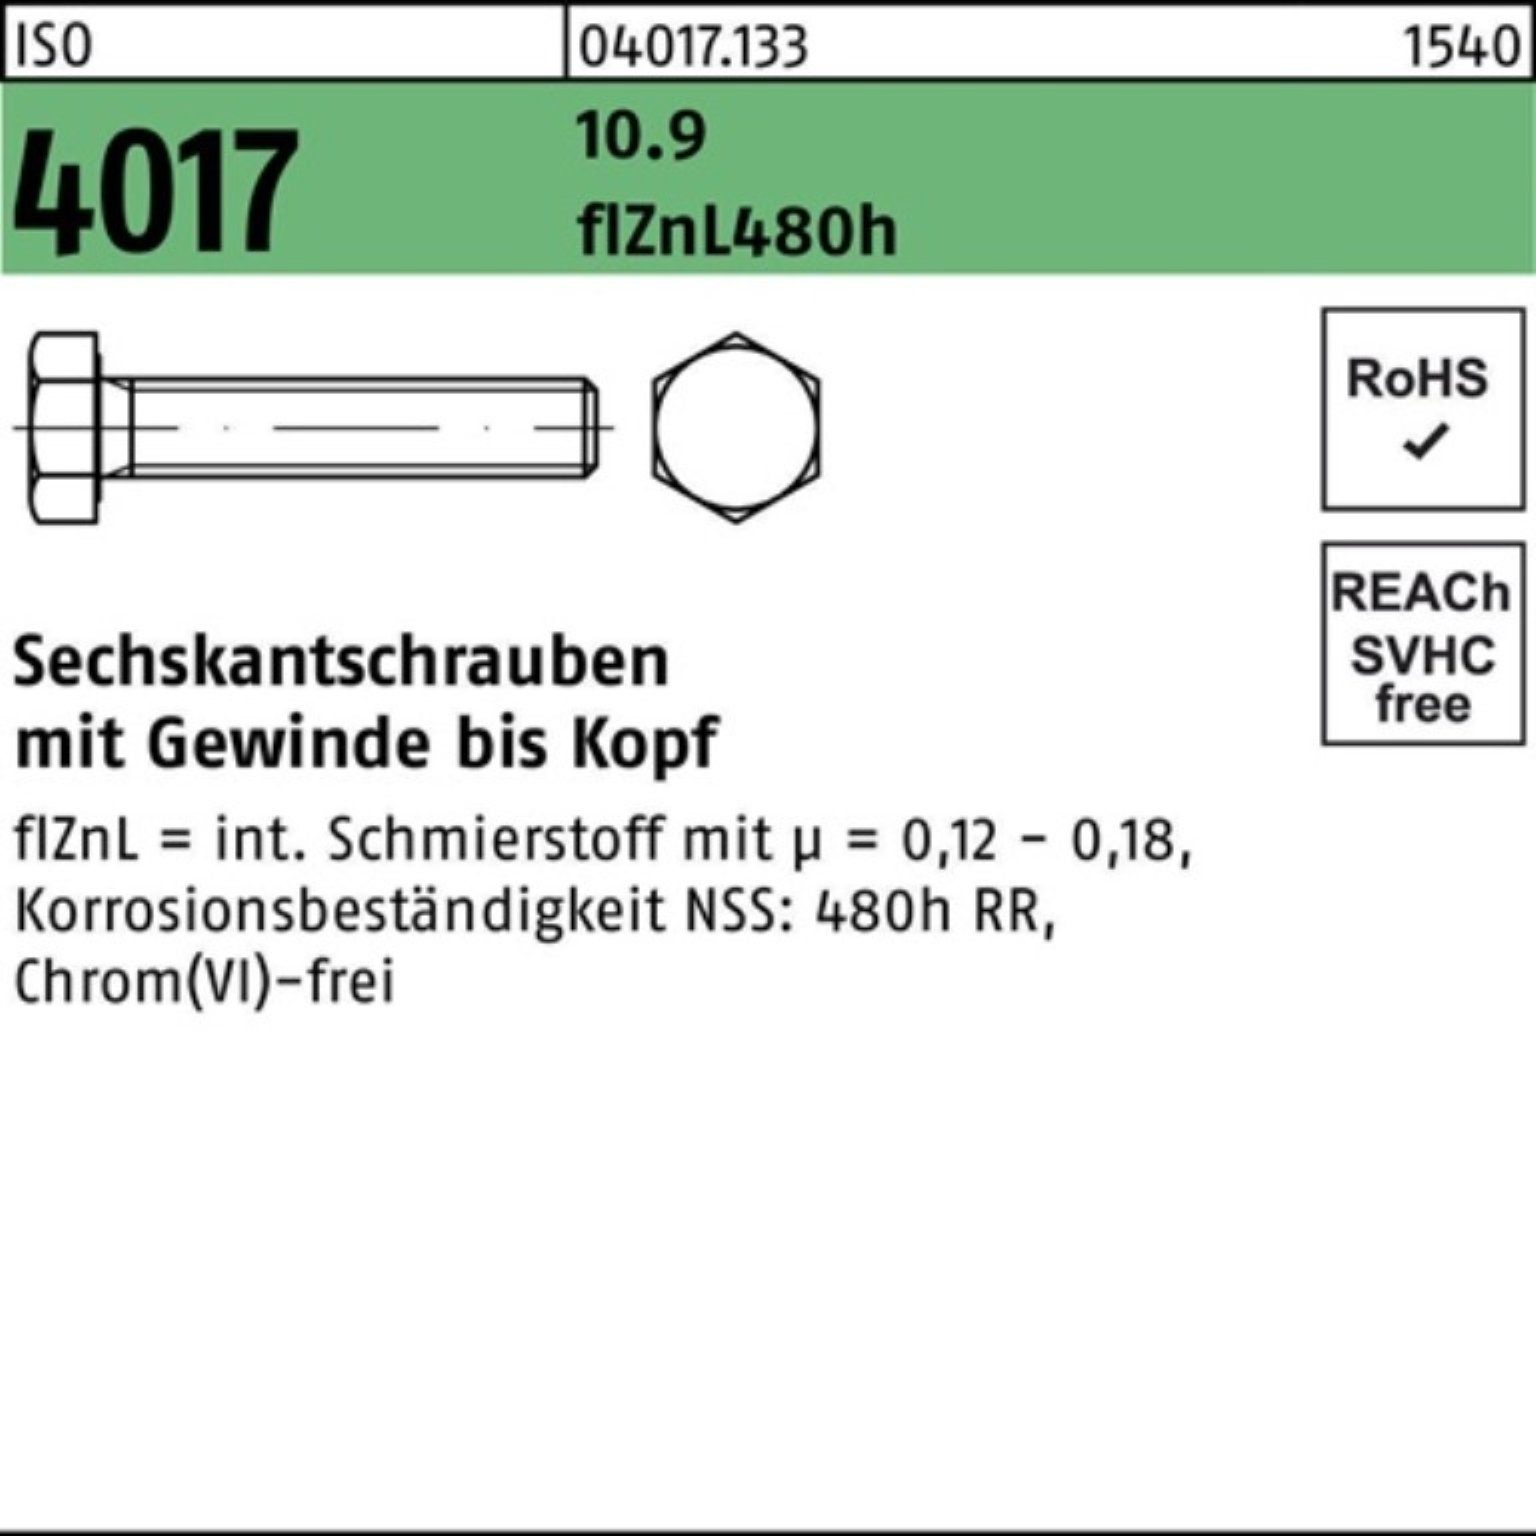 Bufab Sechskantschraube 100er 4017 10.9 45 2 zinklamellenb. Sechskantschraube ISO Pack M20x VG